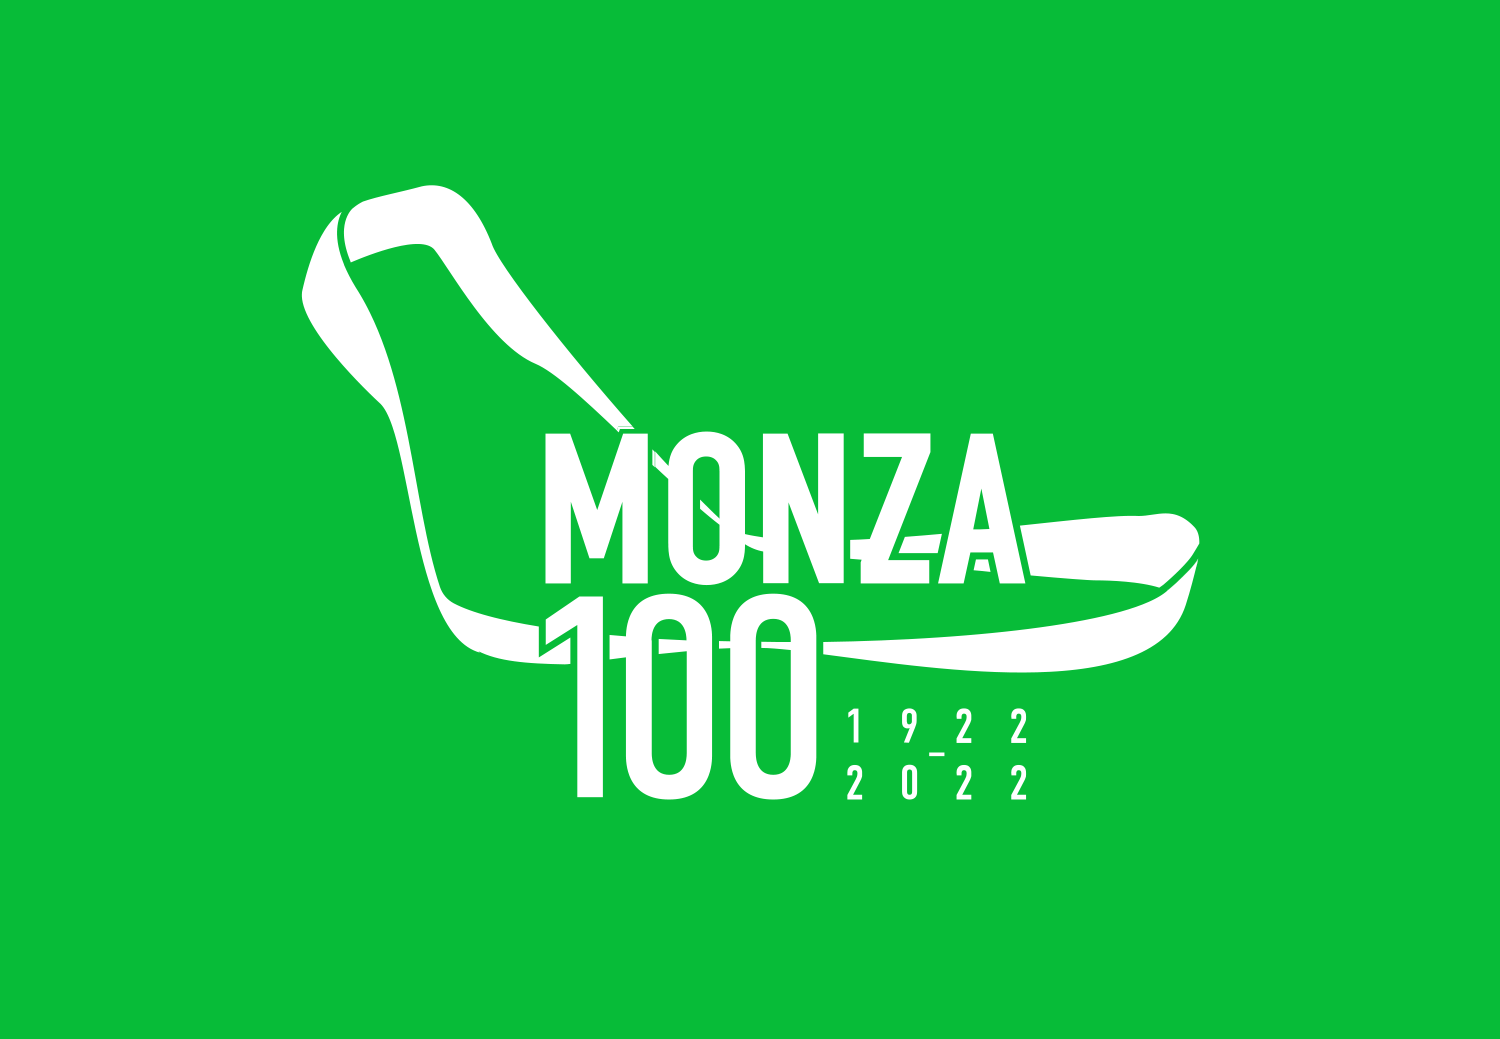 Monza 100